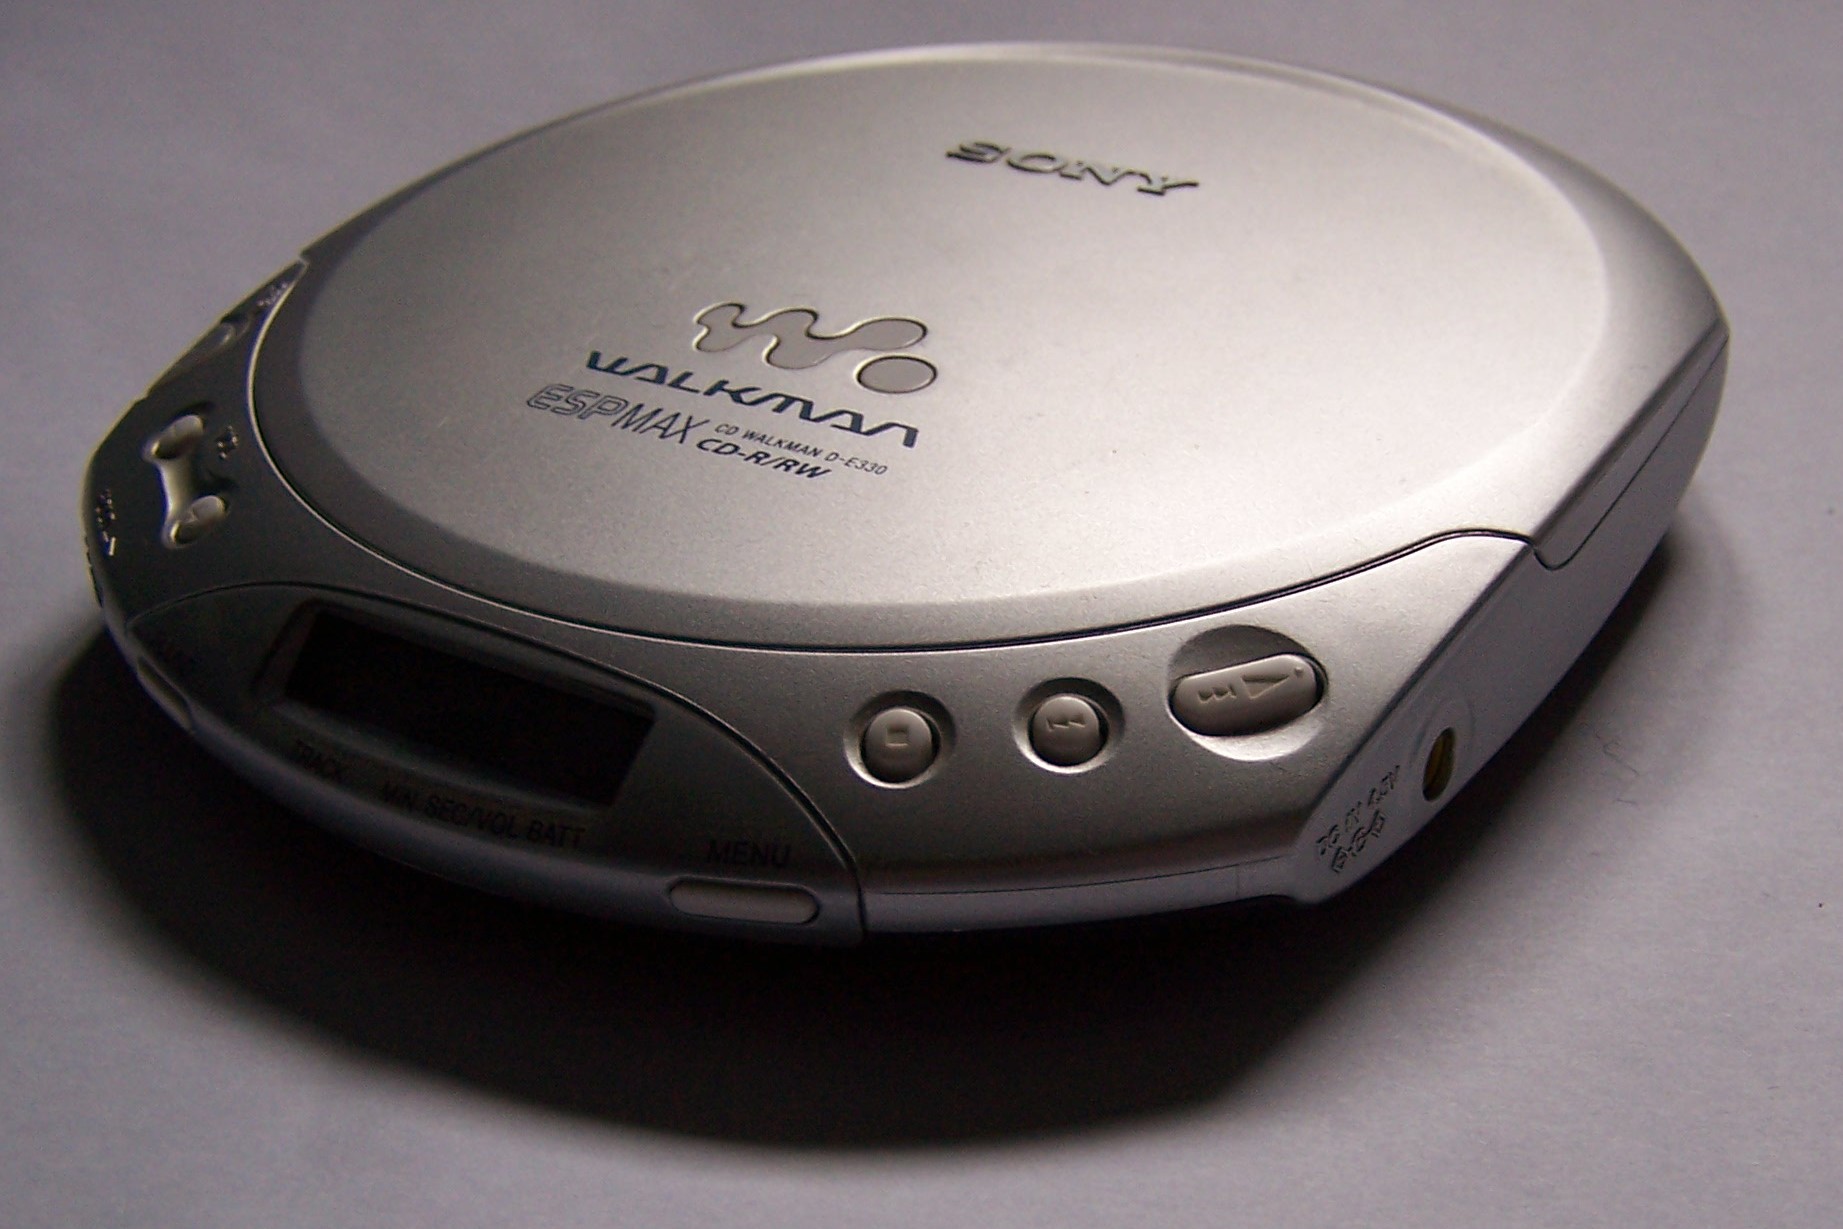 Sony CD Walkman D E330 cropped